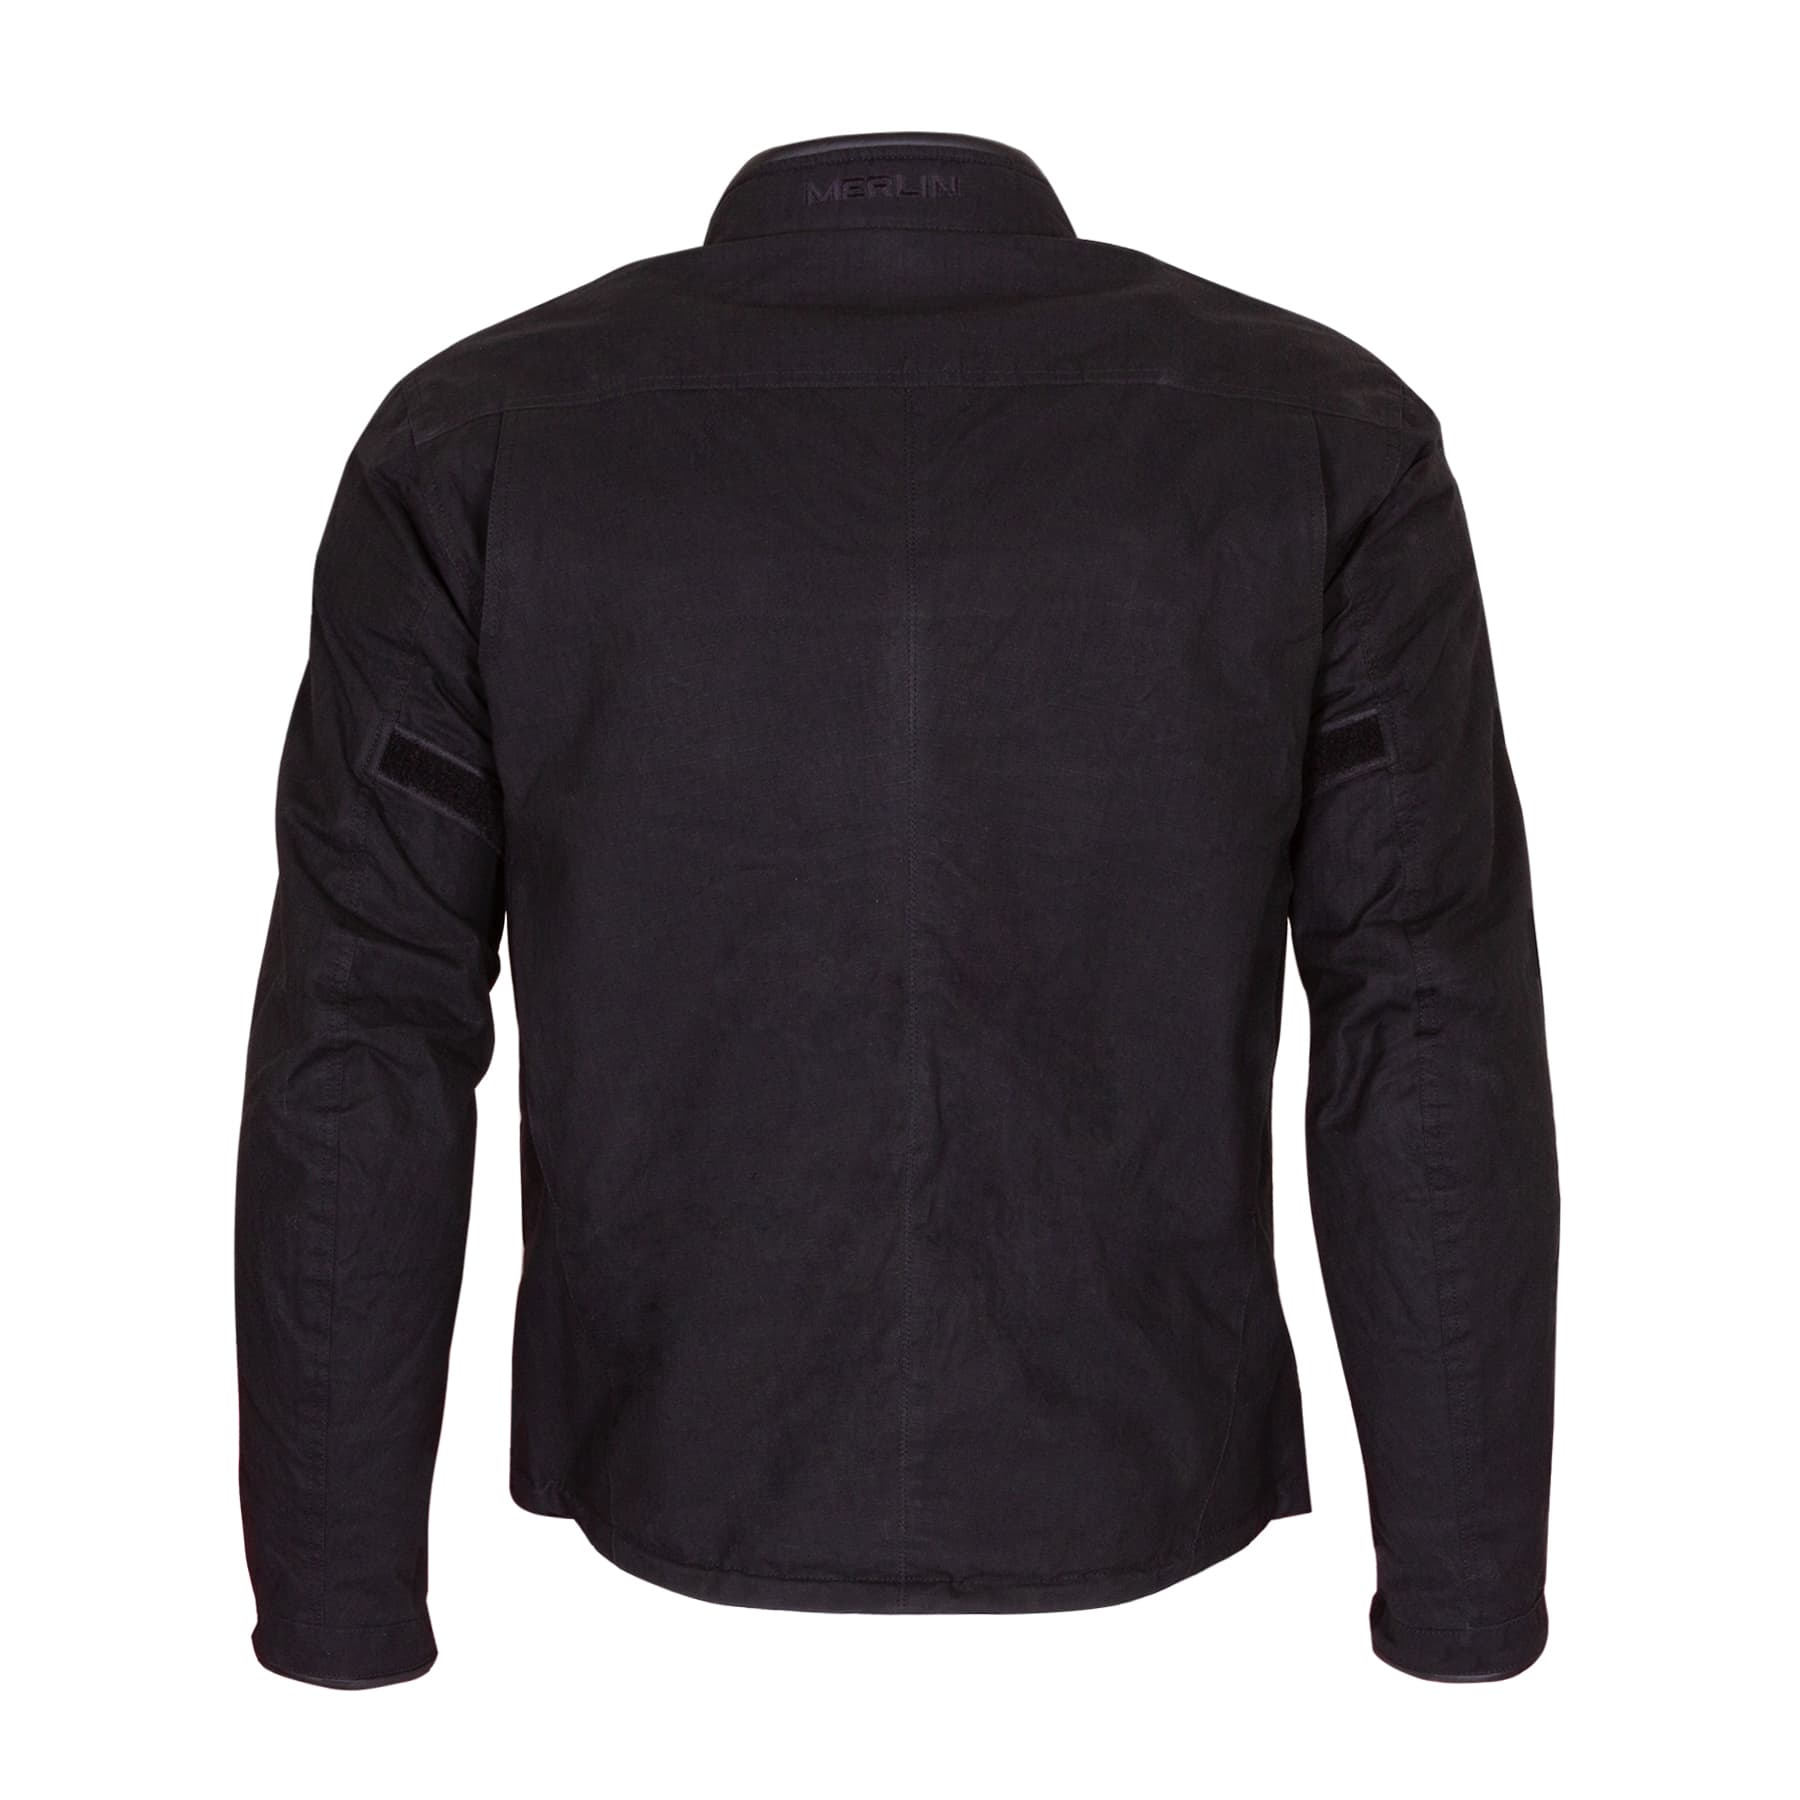 Merlin Drifter jacket in black